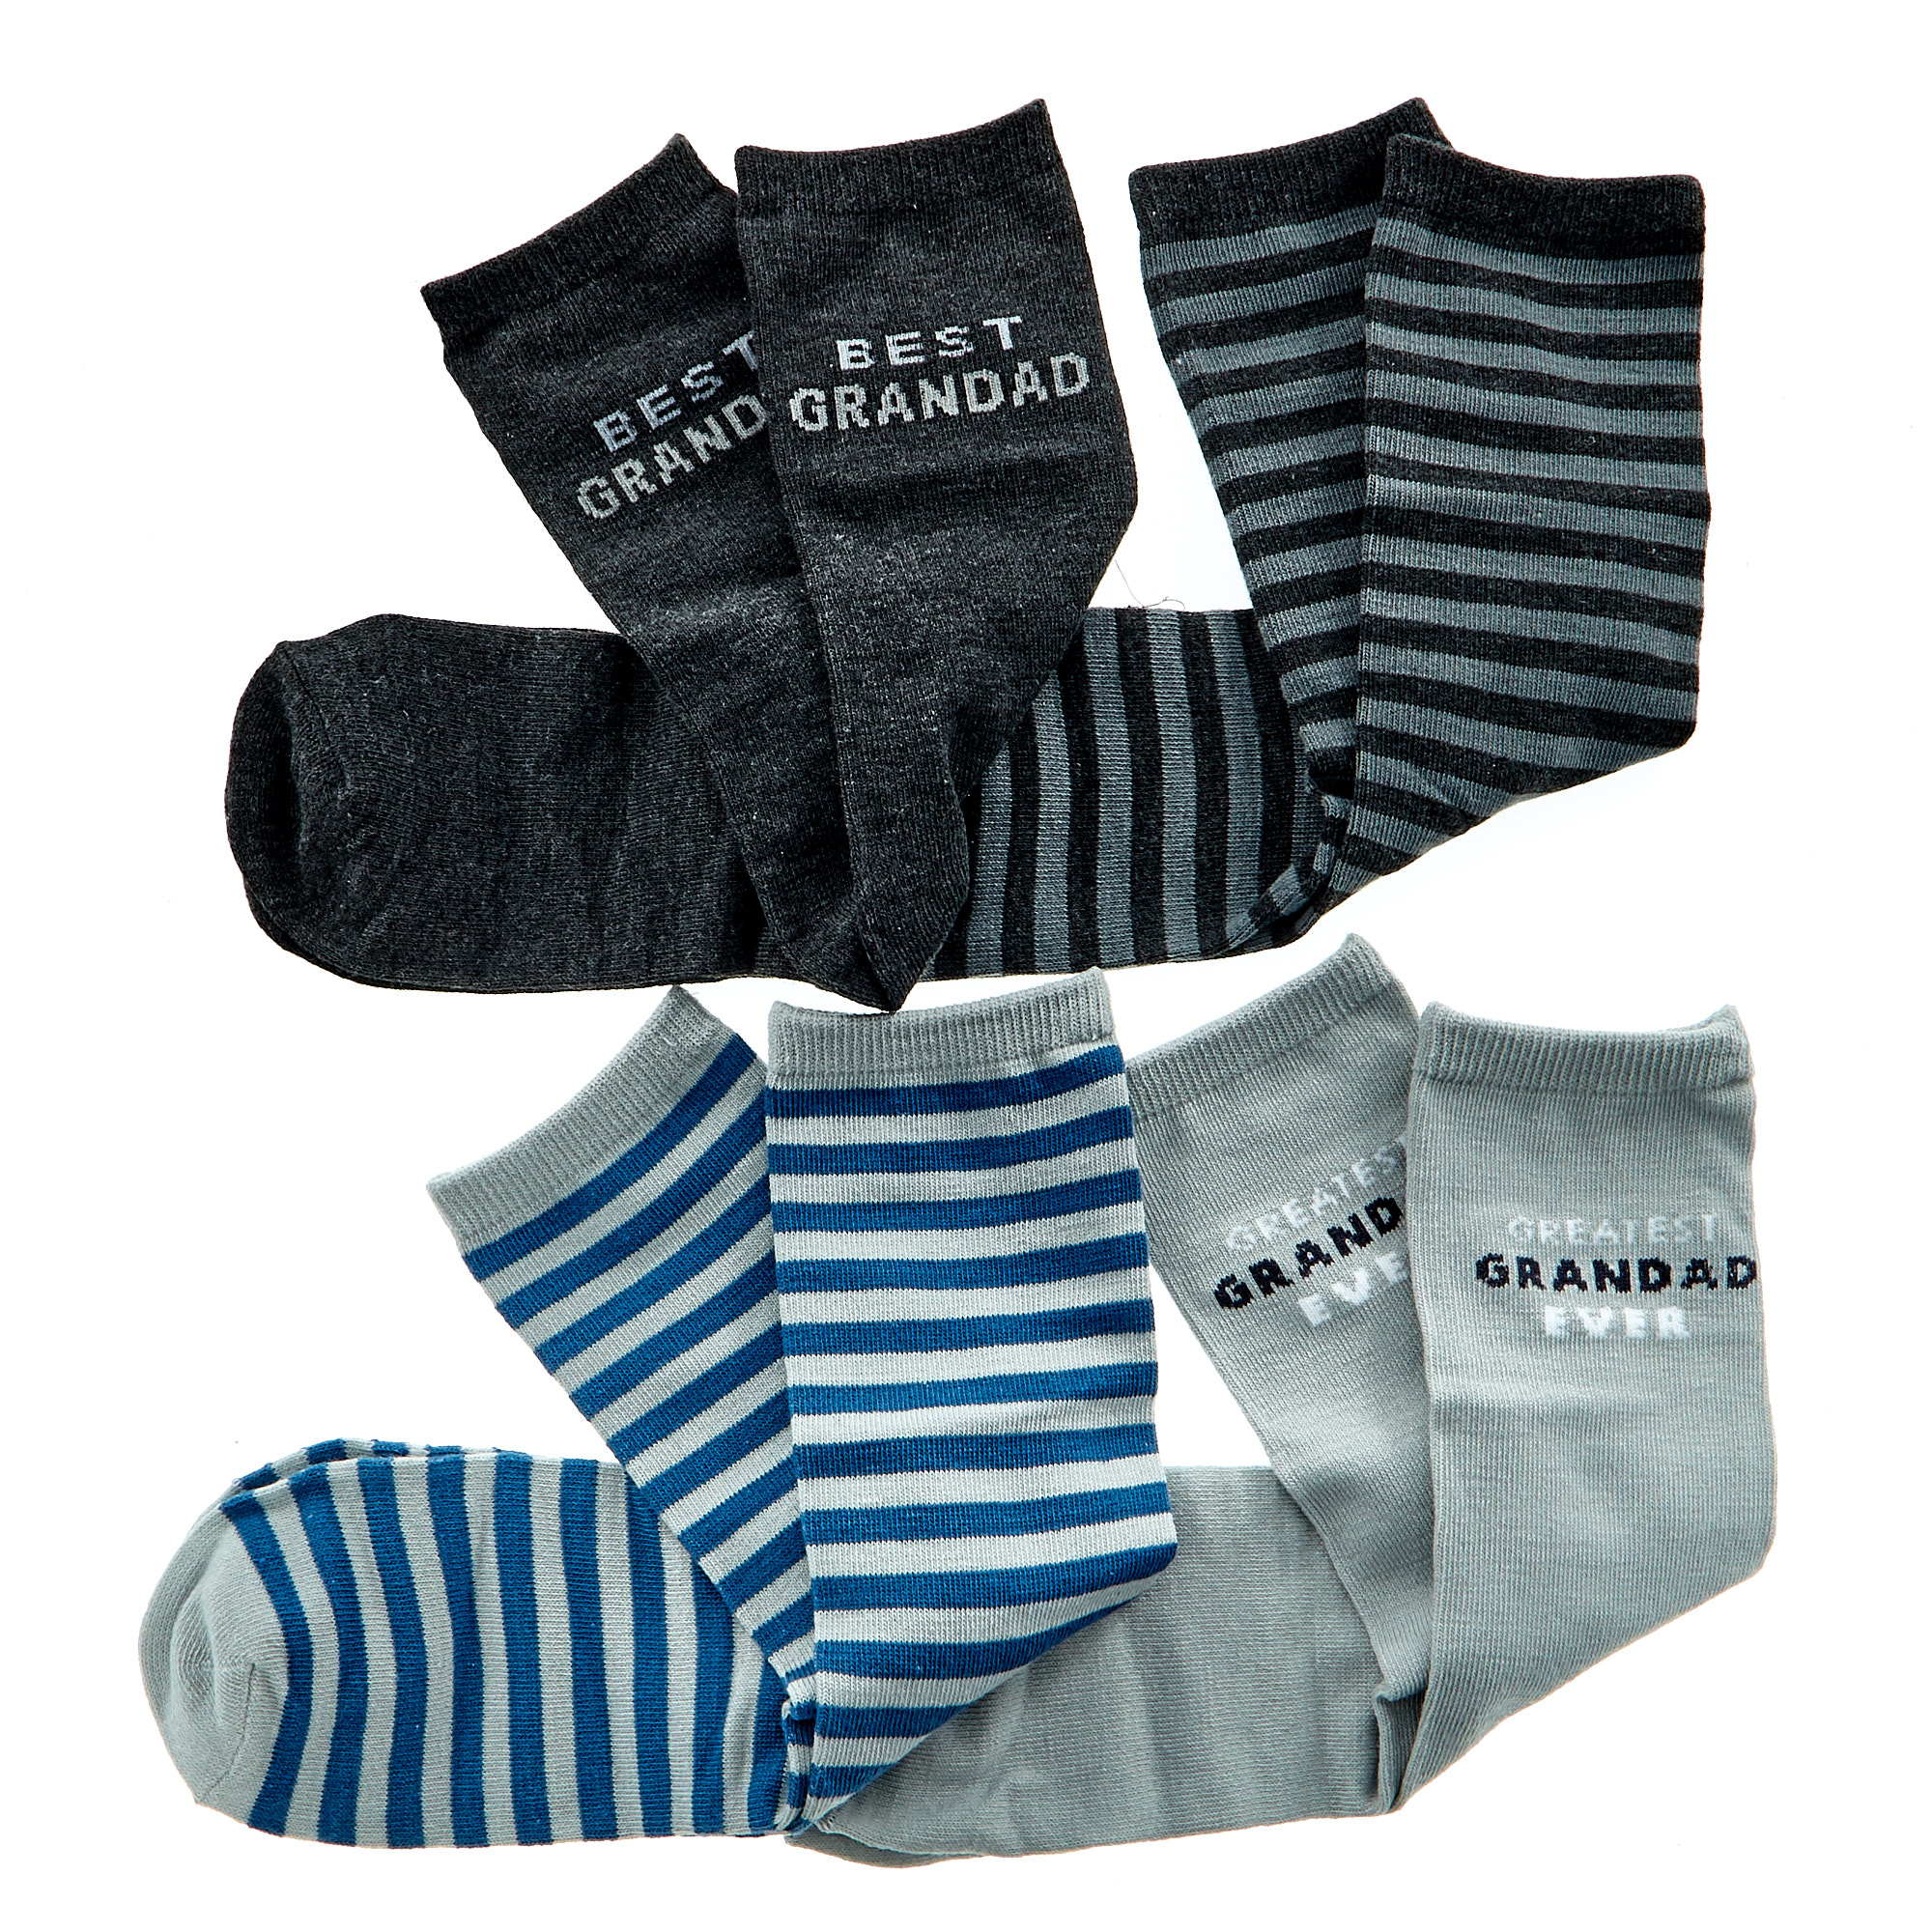 Grandad Simply The Best Socks - 4 Pairs 